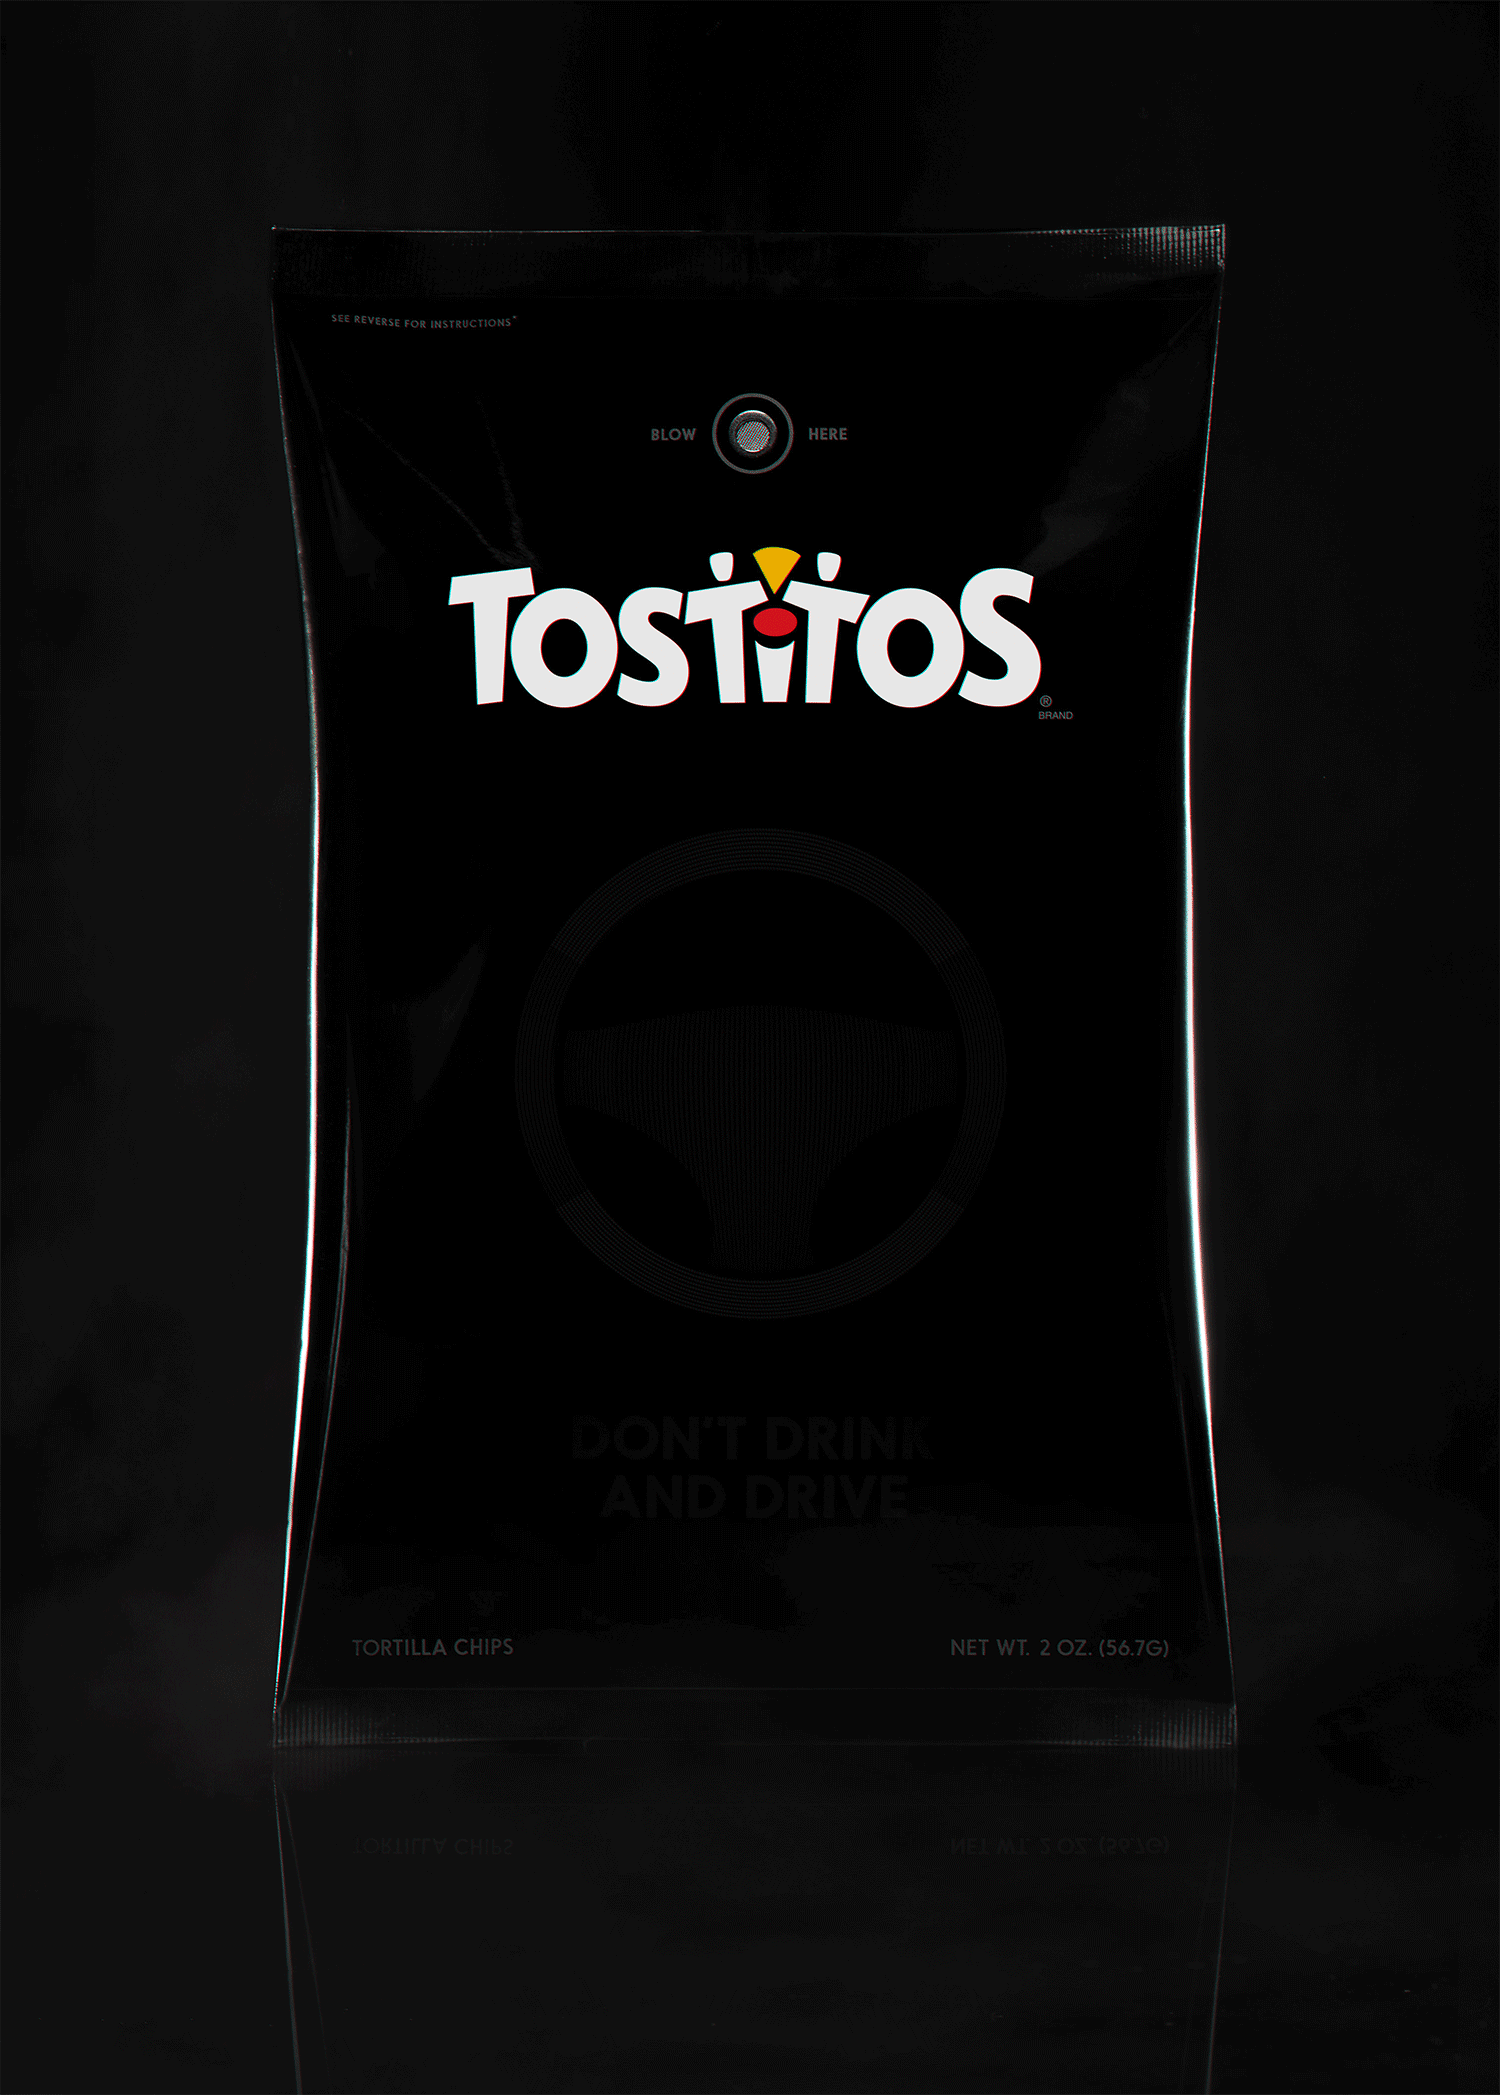 tostitos party bag